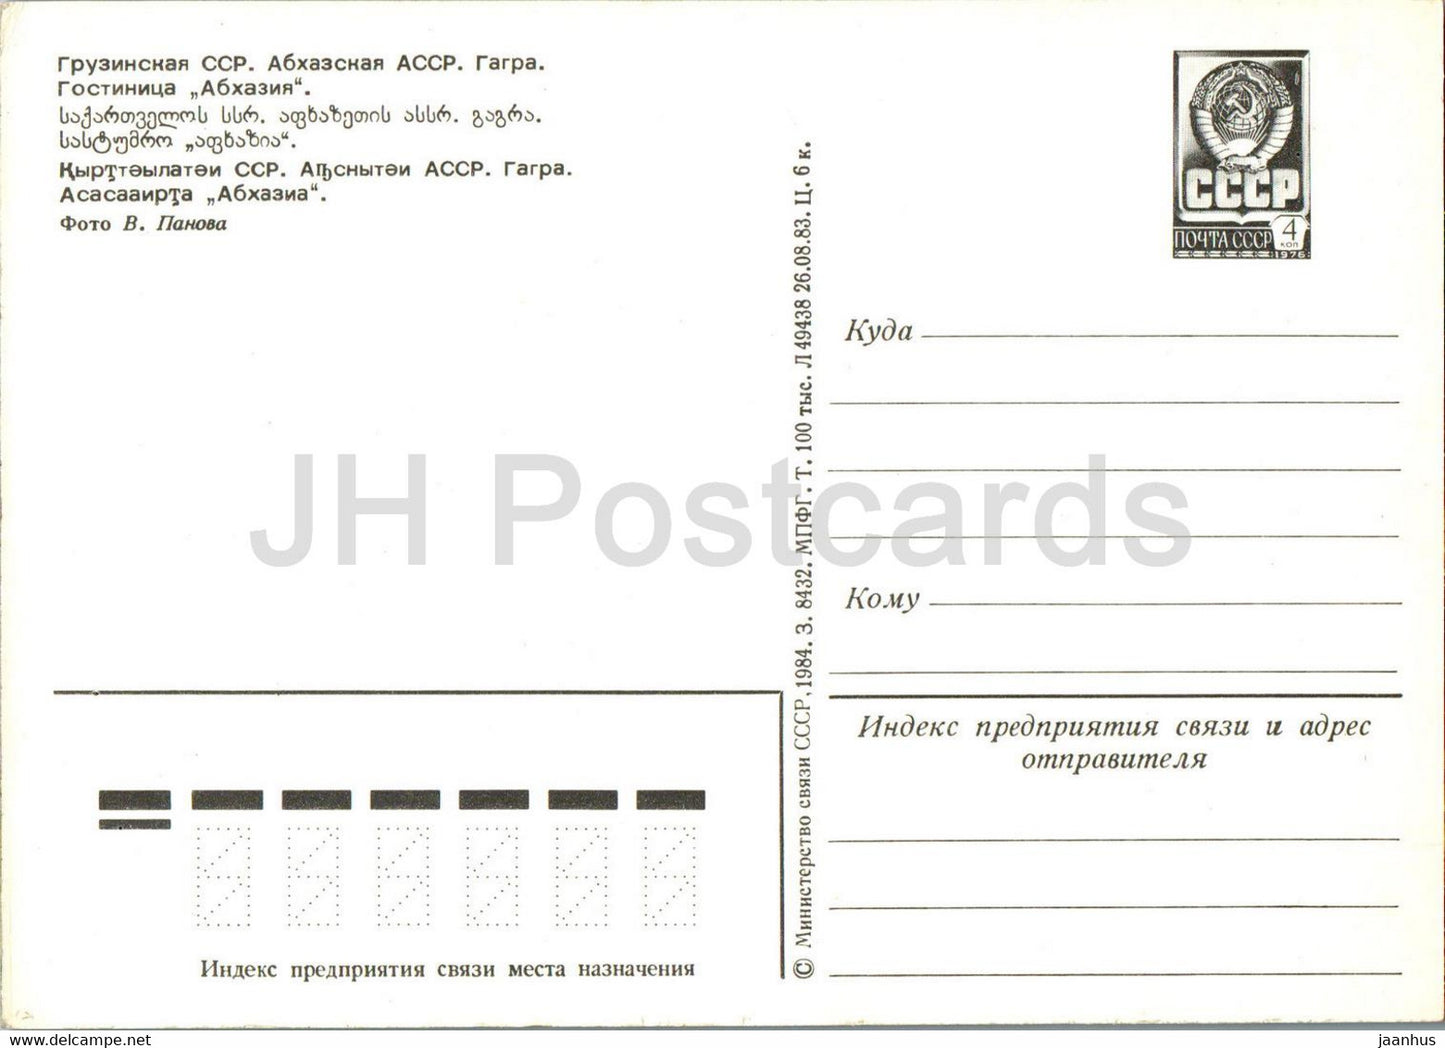 Gagra - hôtel Abkhazie - entier postal - 1984 - Géorgie URSS - inutilisé